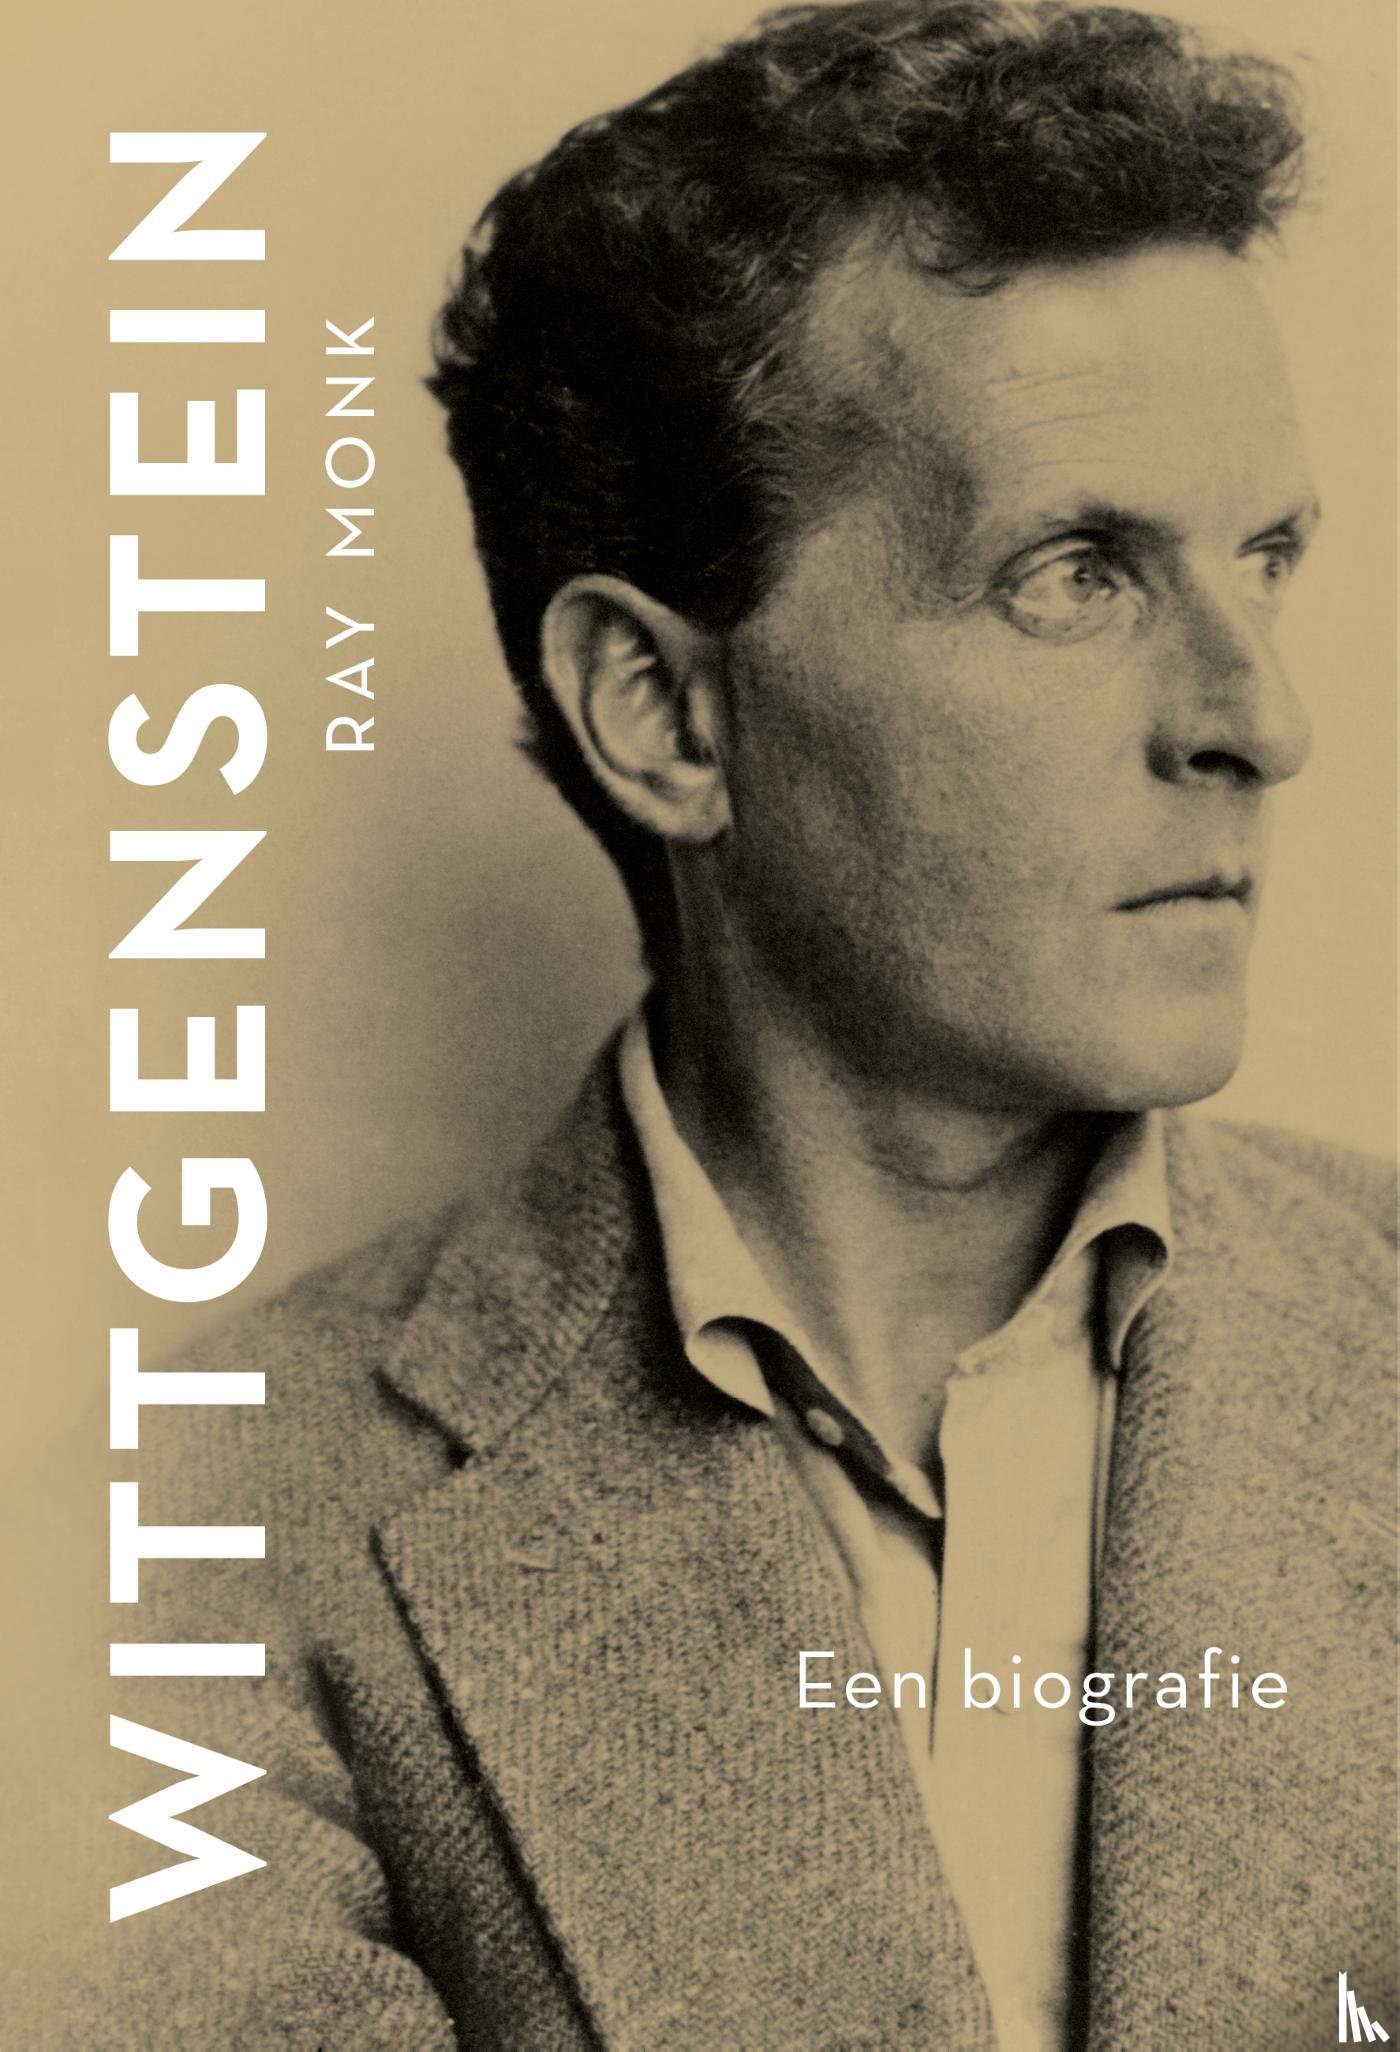 Monk, Ray - Wittgenstein